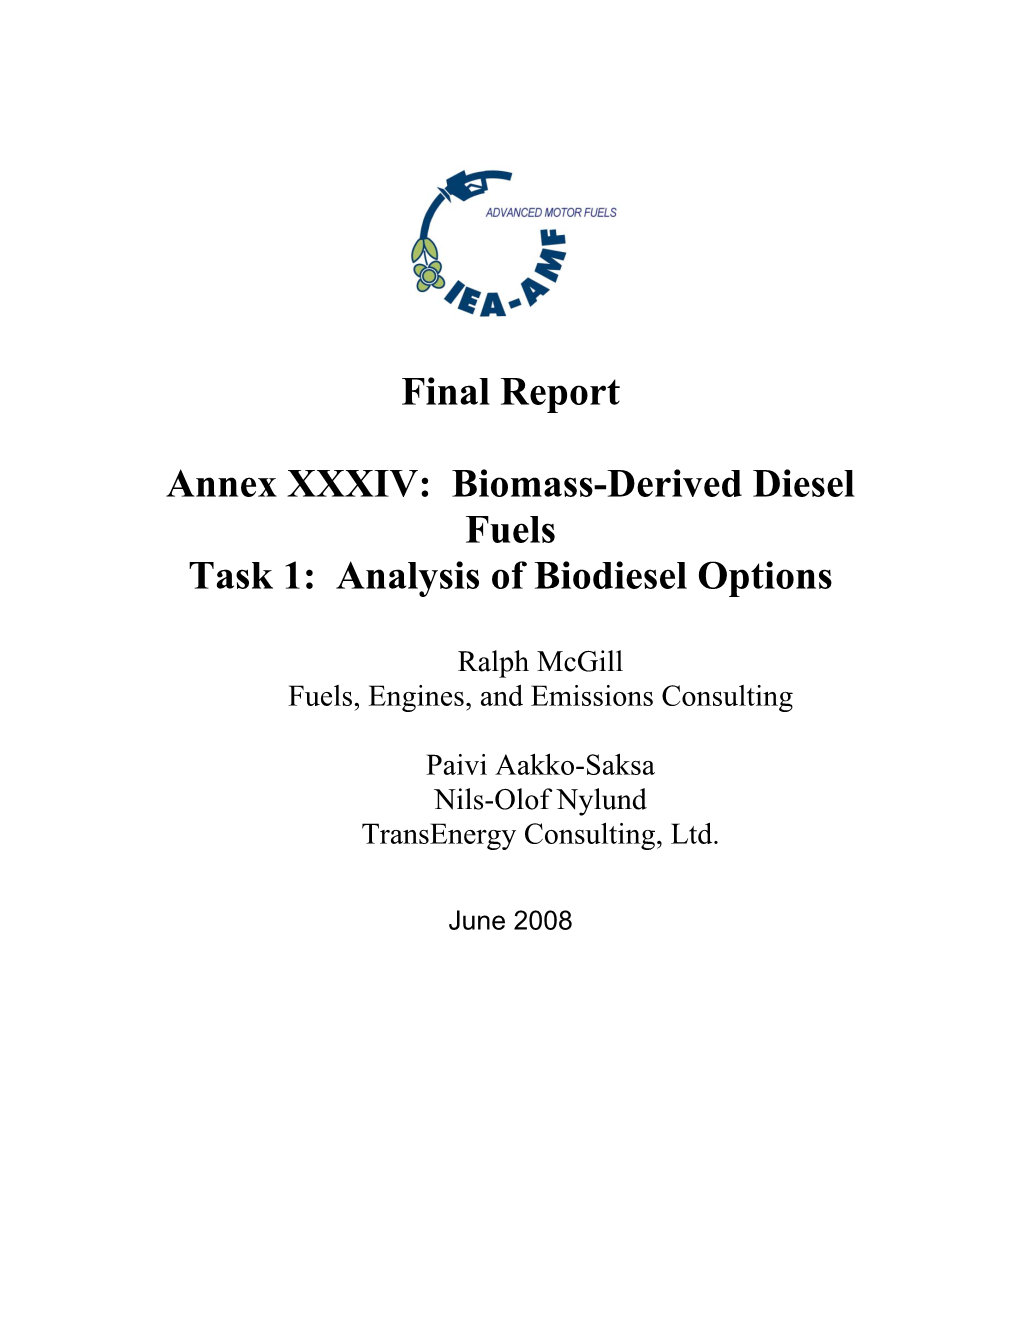 Final Report Annex XXXIV: Biomass-Derived Diesel Fuels Task